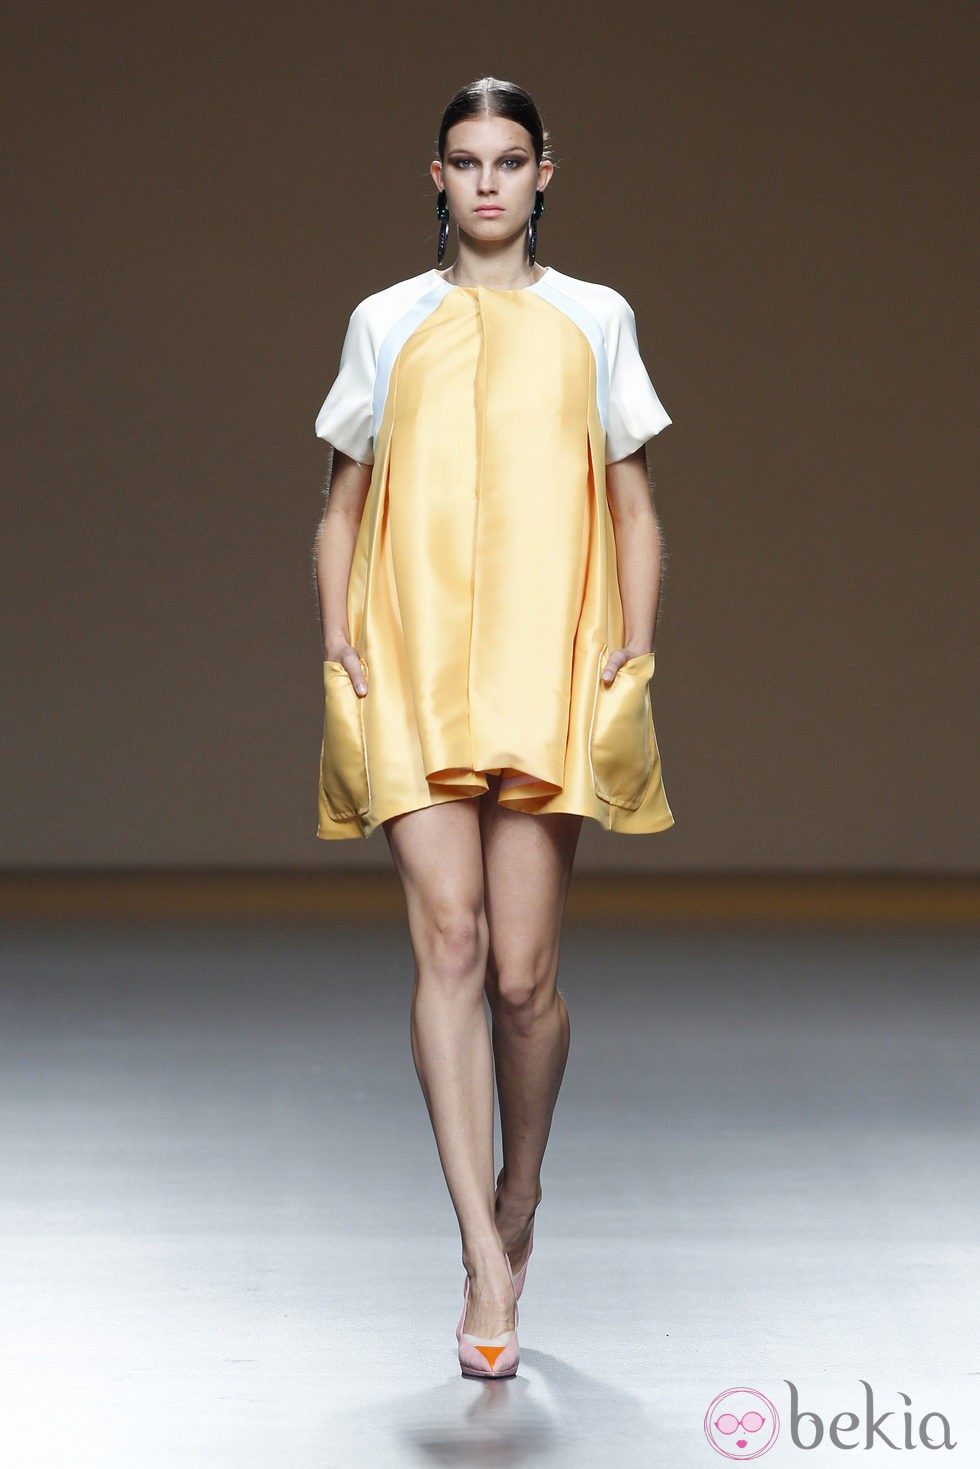 Vestido amarillo de la colección primavera/verano 2014 de Moisés Nieto en Madrid Fashion Week